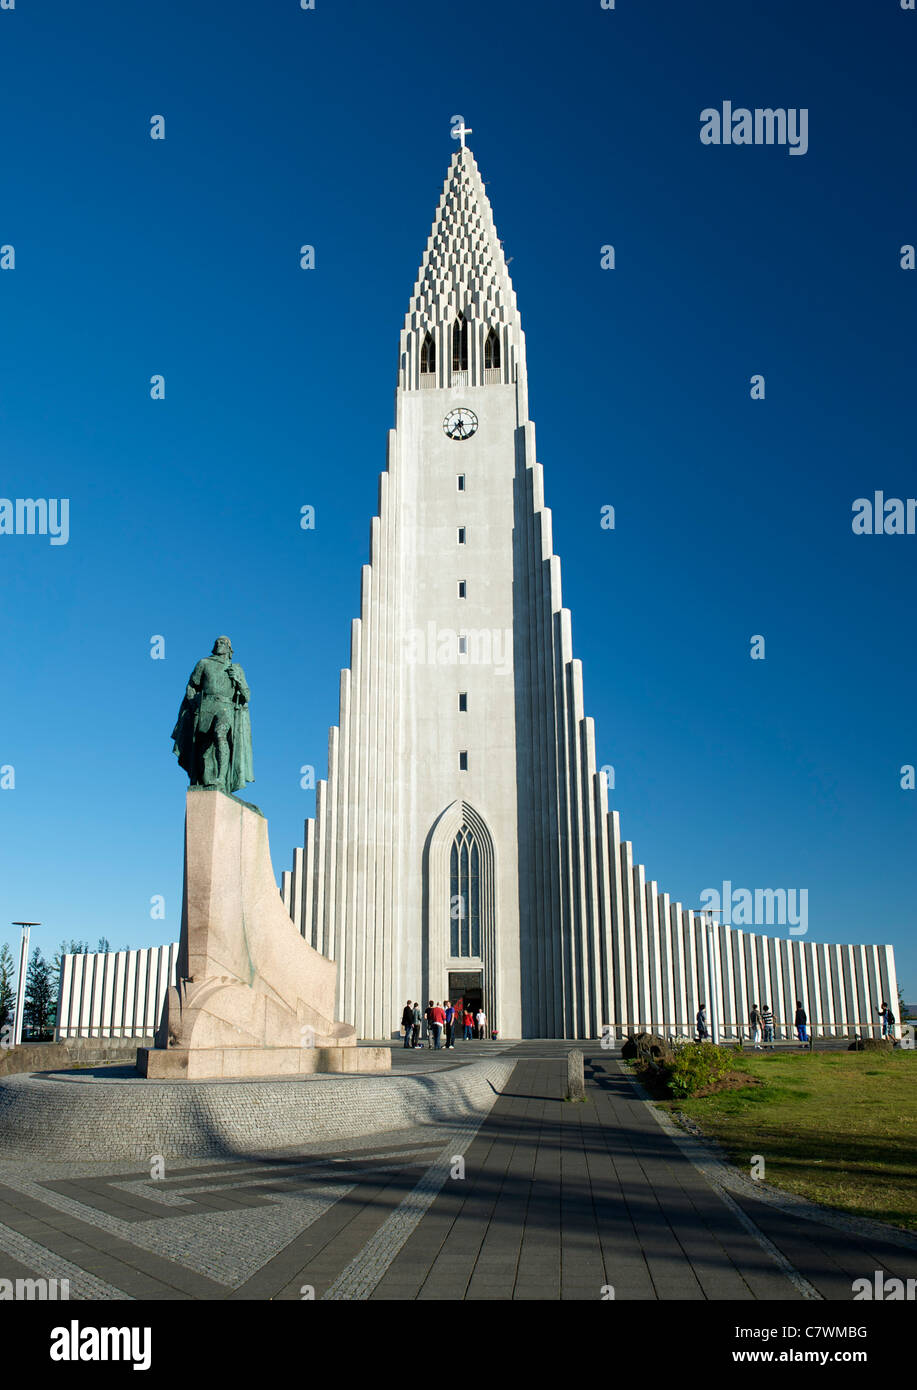 L'église de Hallgrimur (Leif Erickson) Hallgrimskirkja et statue à Reykjavik, la capitale de l'Islande. Banque D'Images